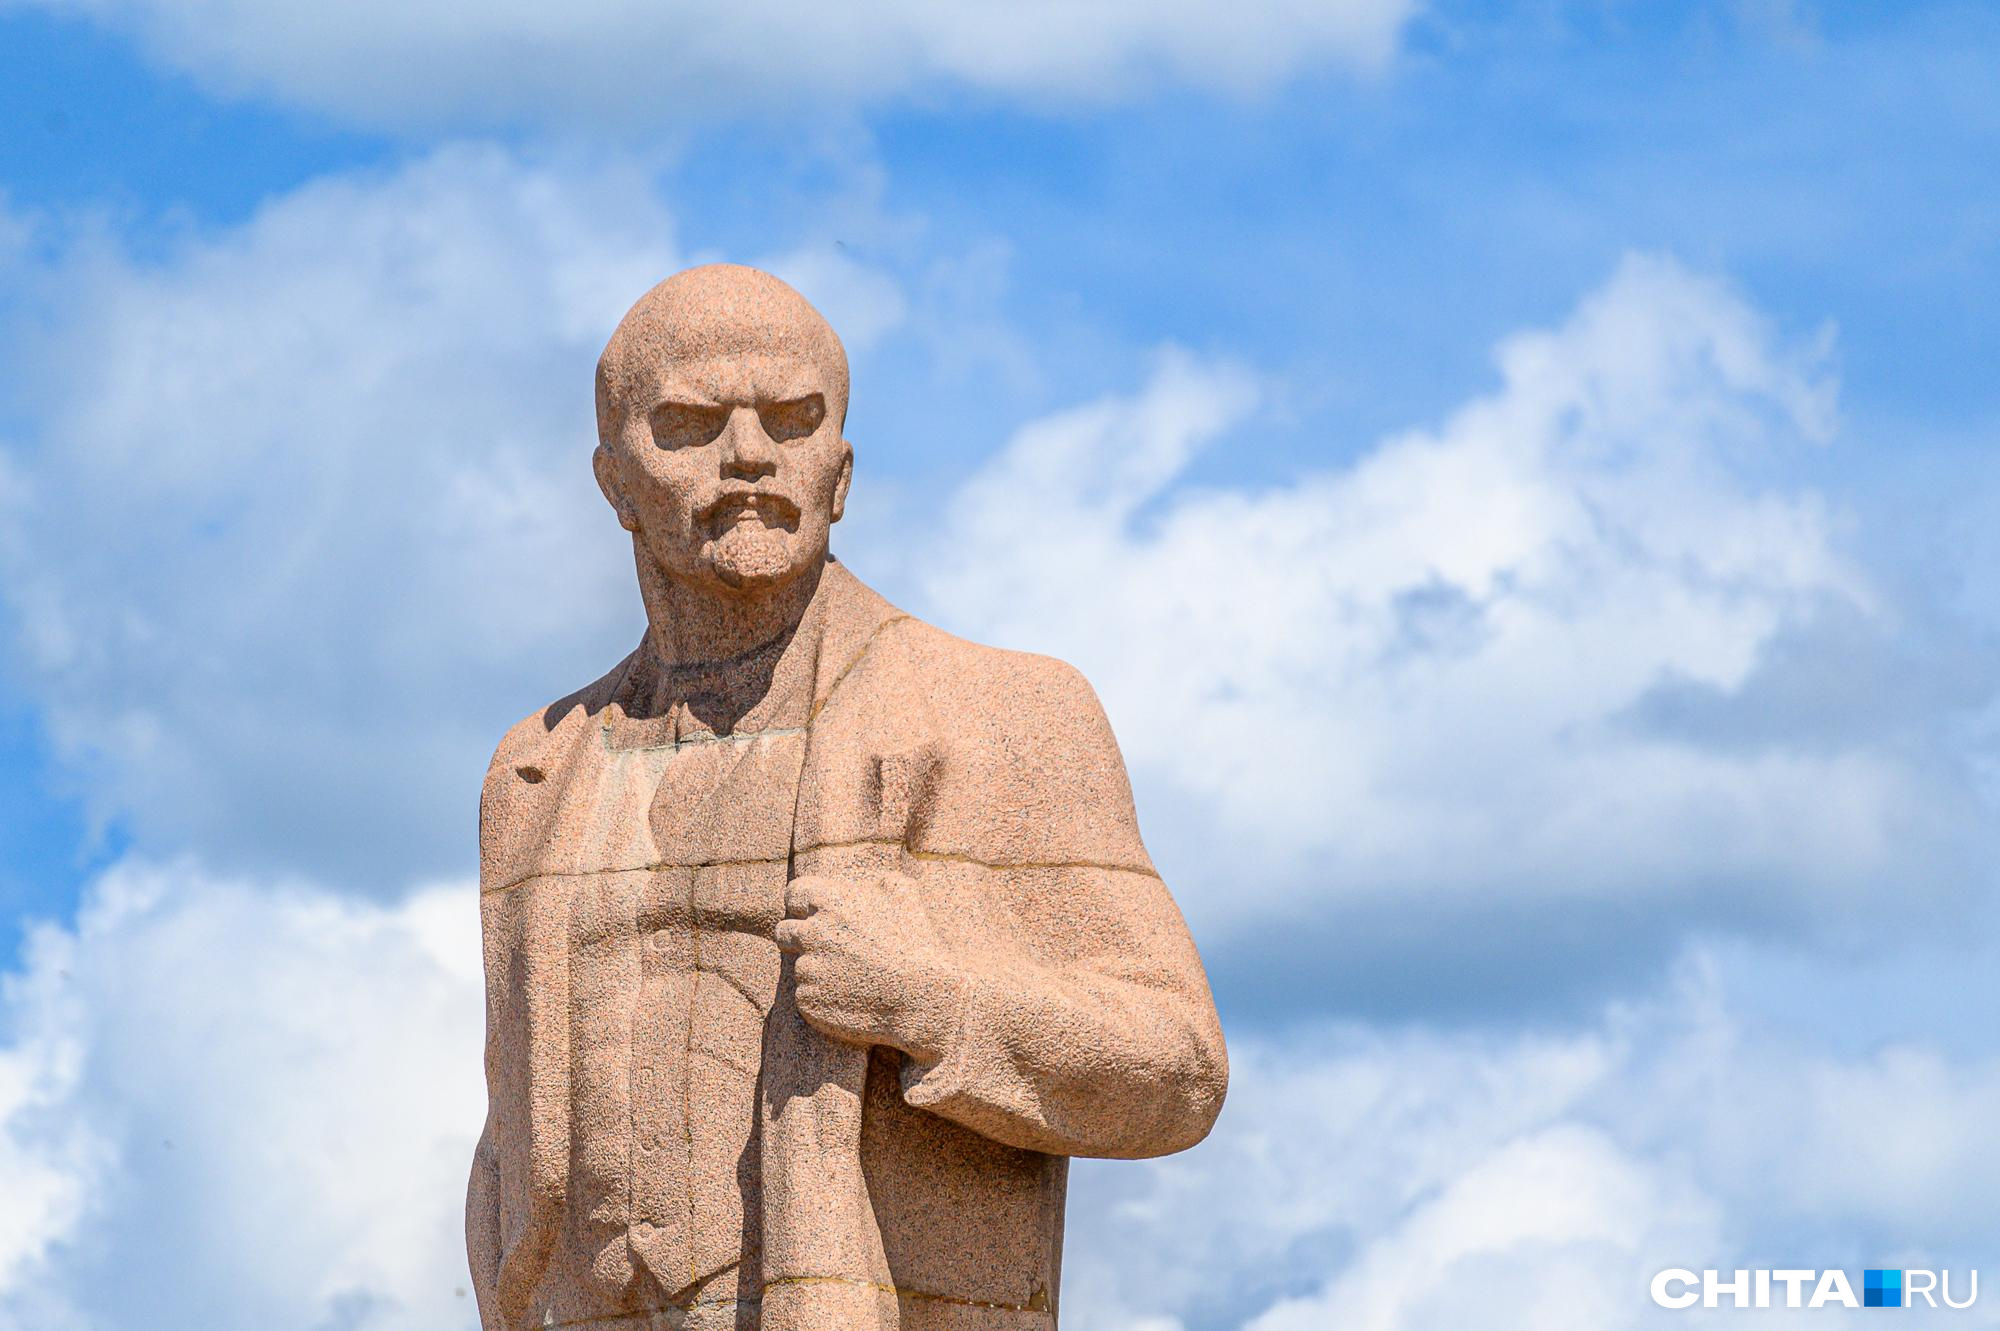 Запрещенный изначально митинг в честь 100-летия памяти Ленина все-таки пройдет в Чите